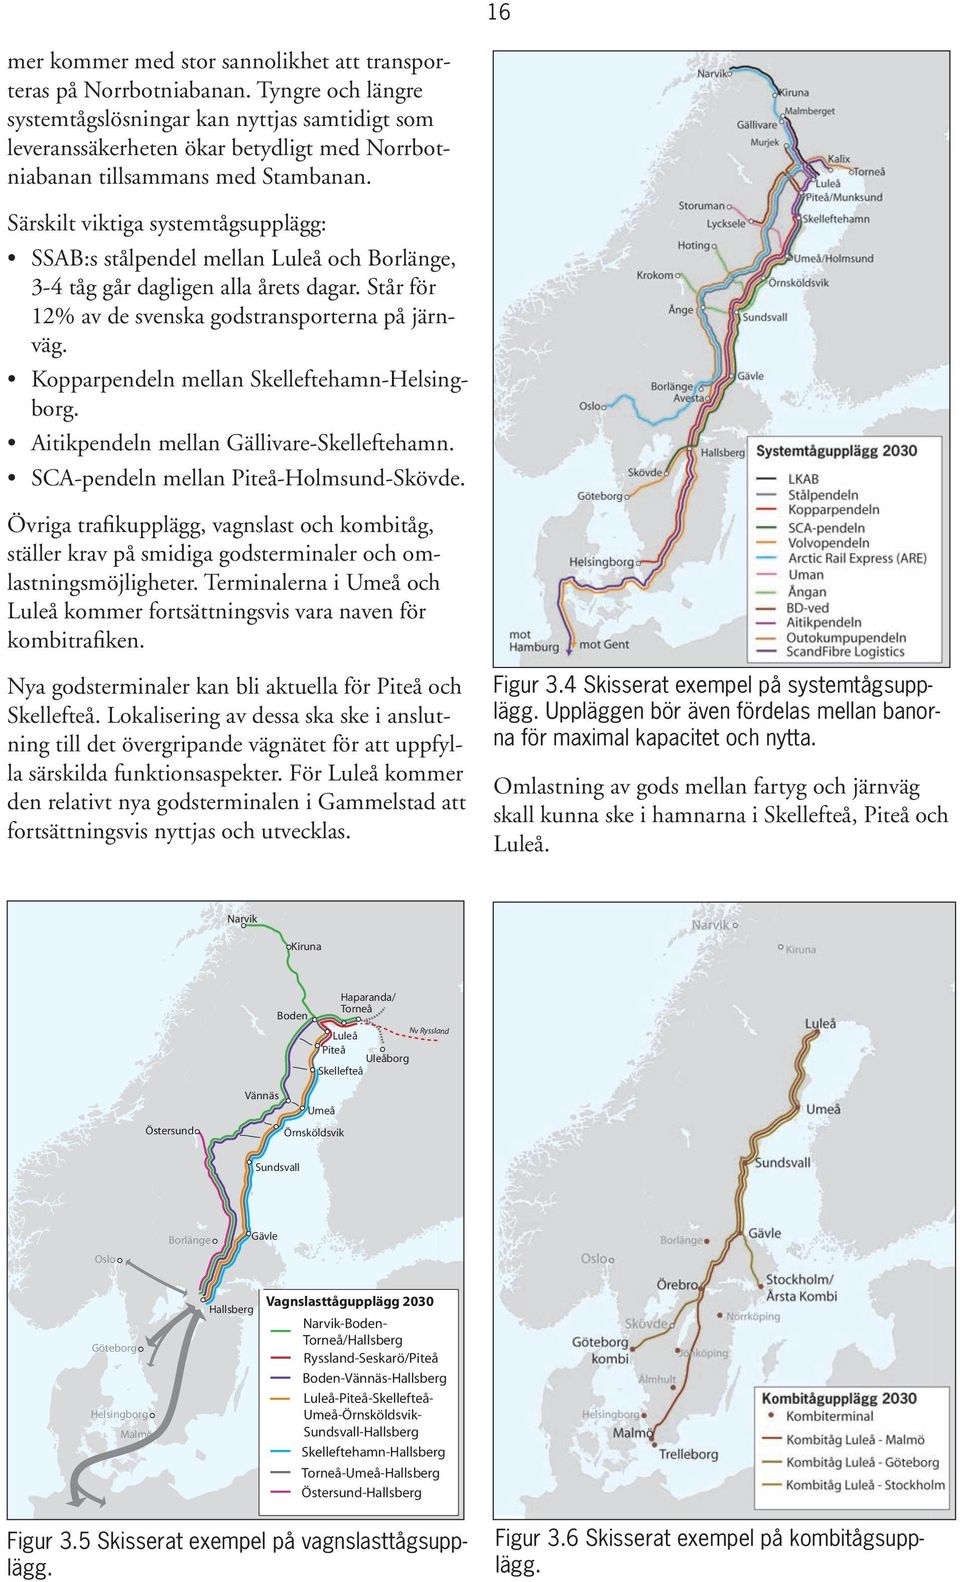 Särskilt viktiga systemtågsupplägg: SSAB:s stålpendel mellan Luleå och Borlänge, 3-4 tåg går dagligen alla årets dagar. Står för 12% av de svenska godstransporterna på järnväg.